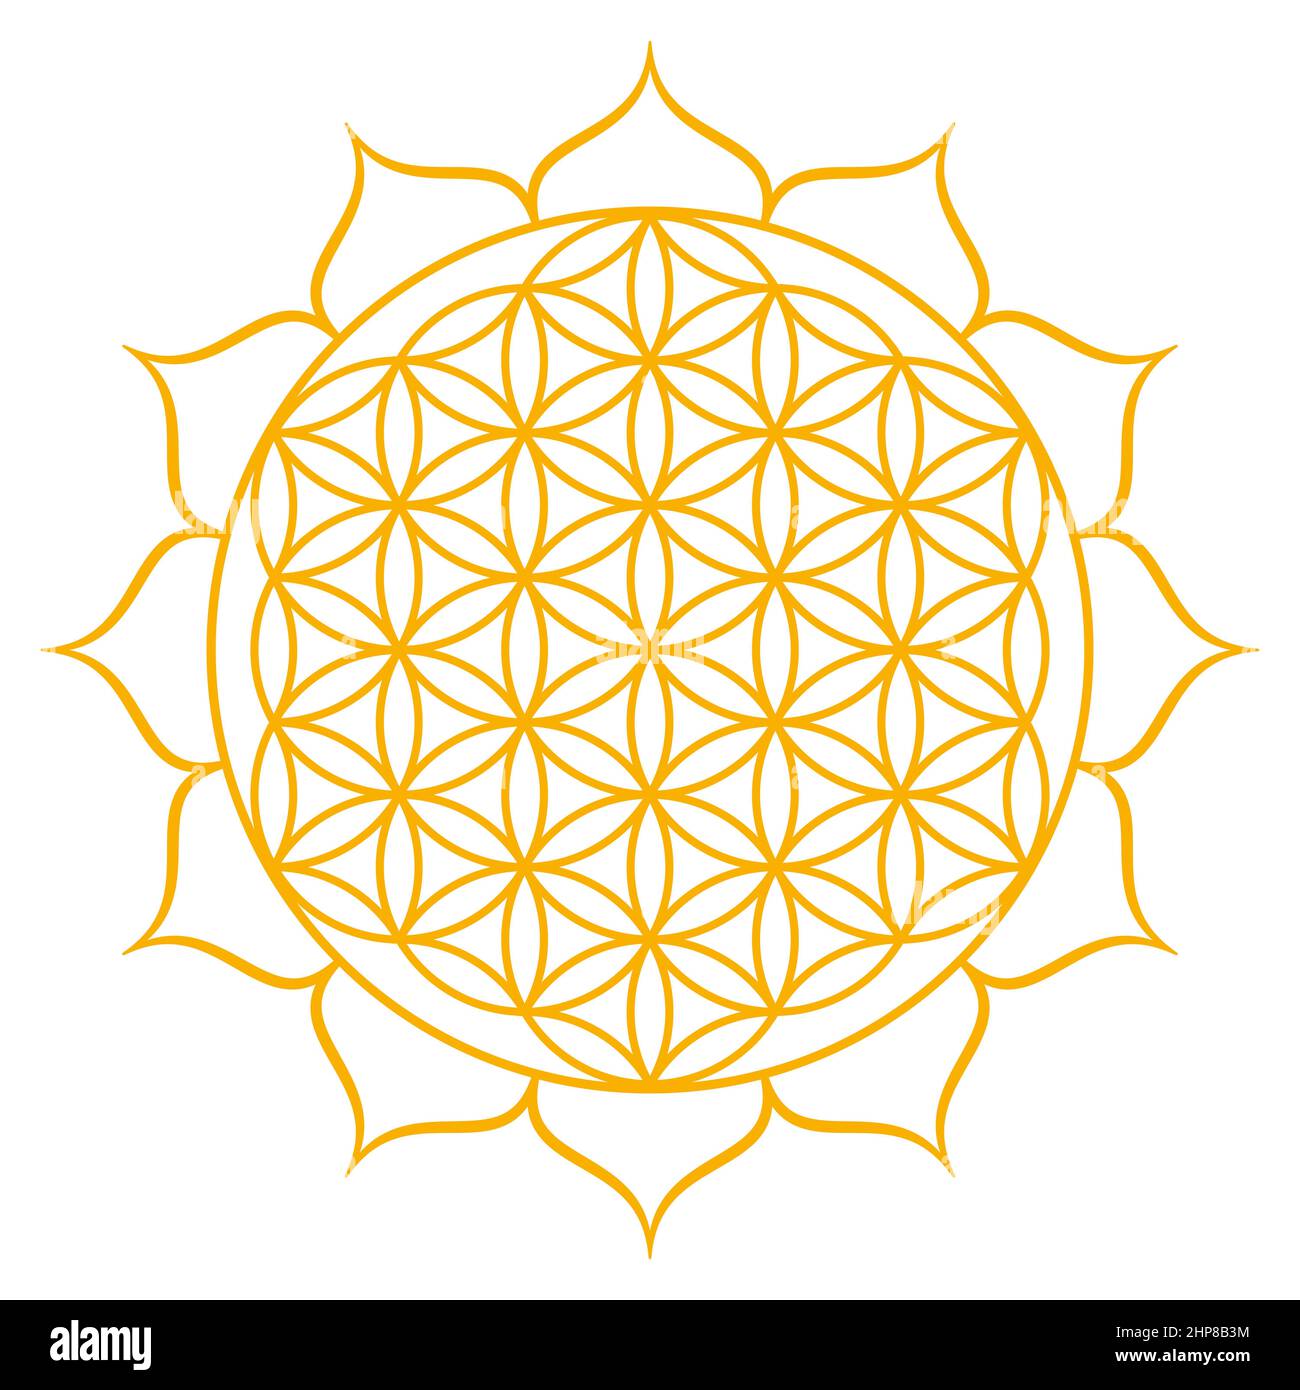 Fiore d'oro della vita con dodici petali. Figura geometrica, simbolo spirituale e geometria sacra. Cerchi sovrapposti che formano un mandala. Foto Stock